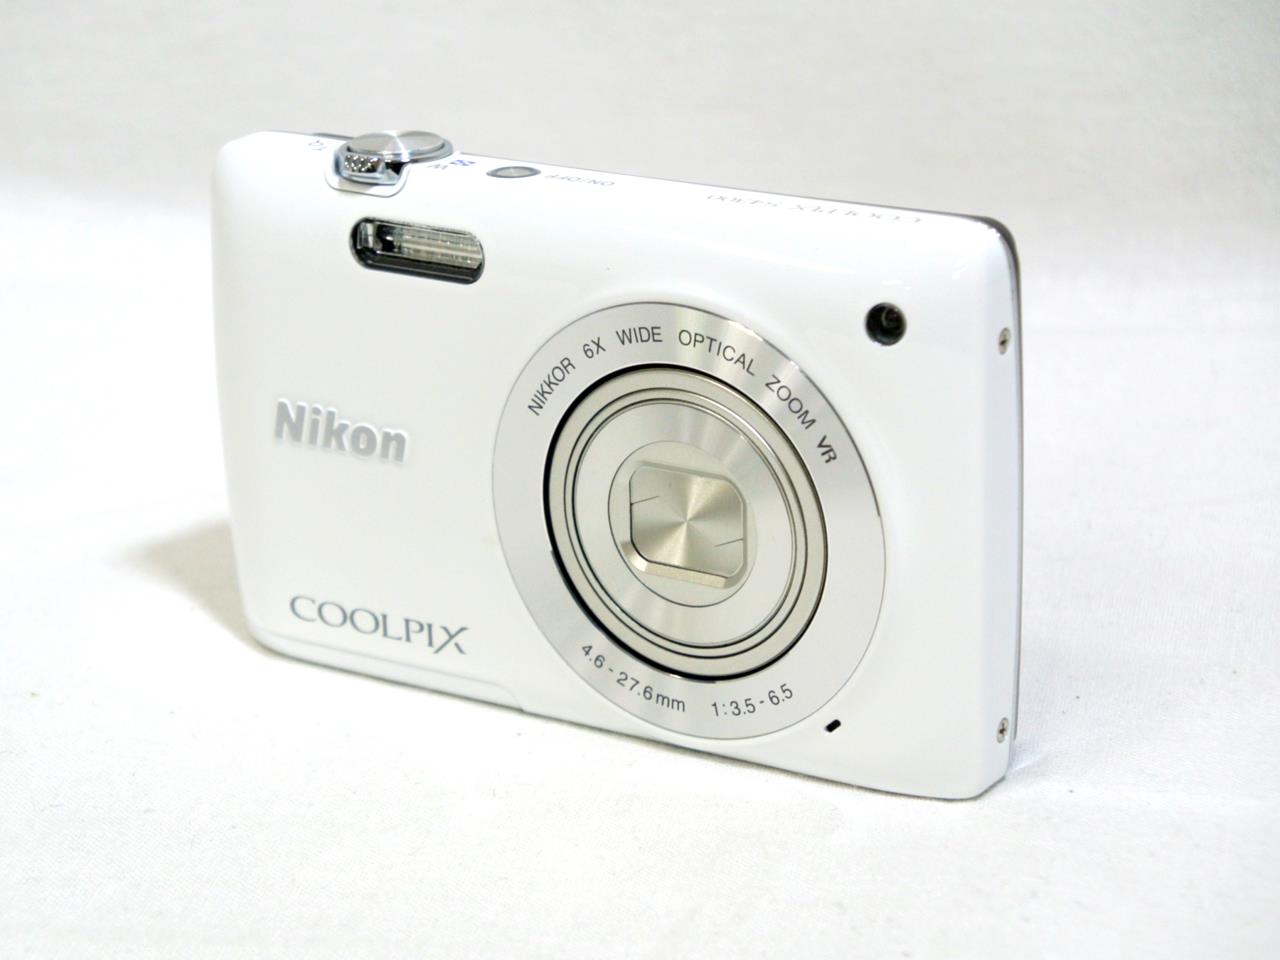 Nikon COOLPIX S4300 used (SD16GB付き) - コンパクトデジタルカメラ